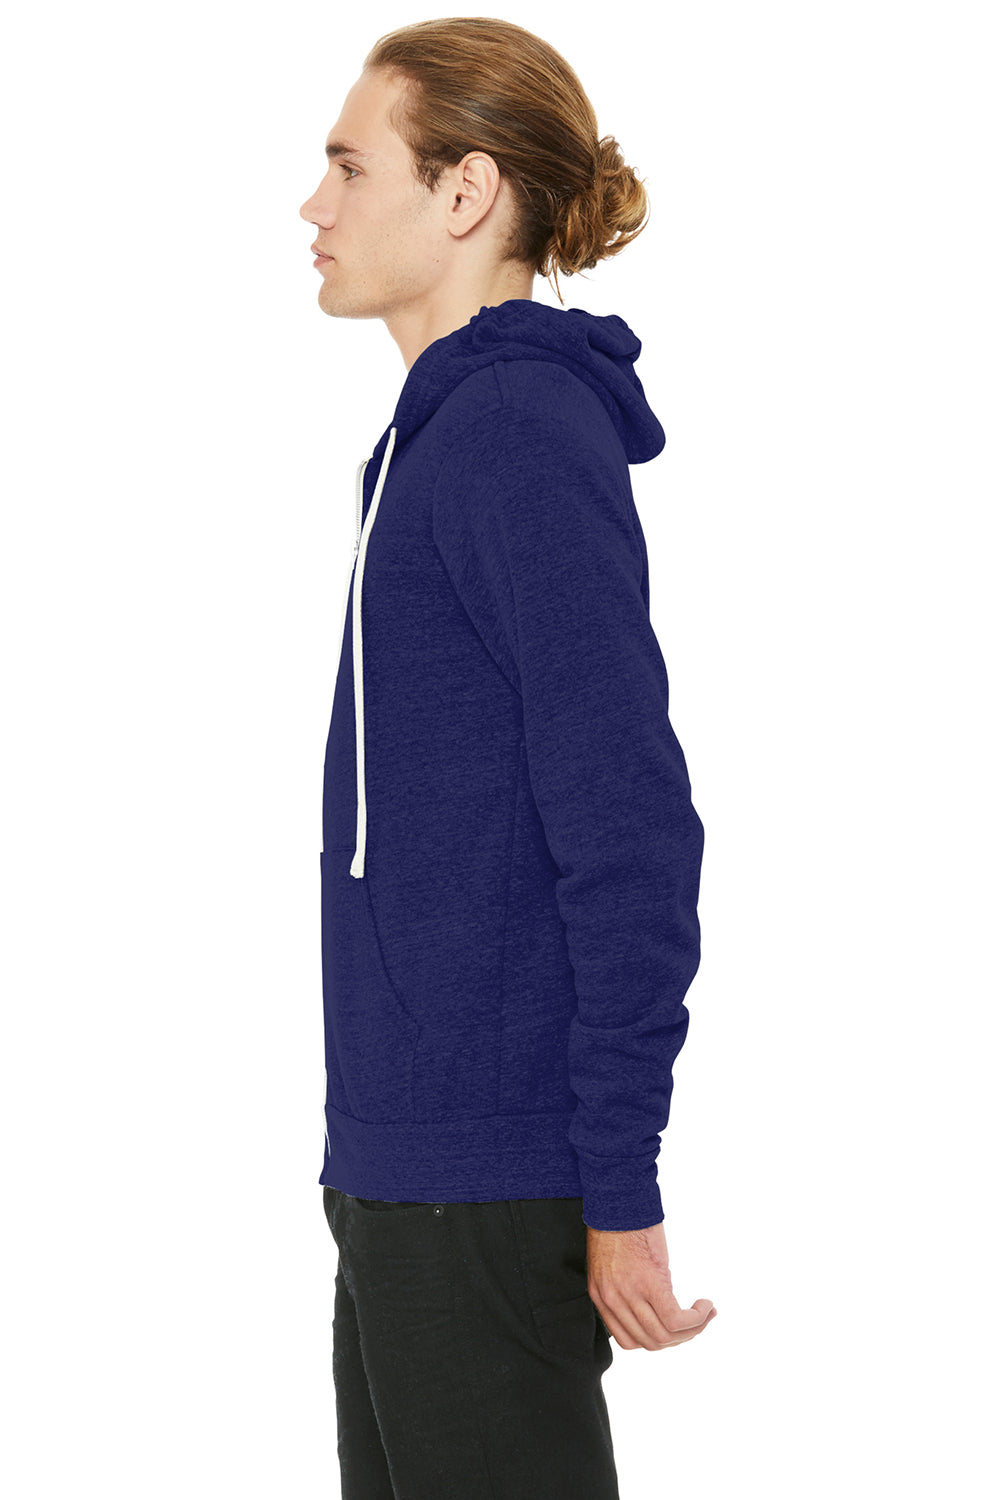 Bella + Canvas BC3909/3909 Mens Sponge Fleece Full Zip Hooded Sweatshirt Hoodie Navy Blue Model Side